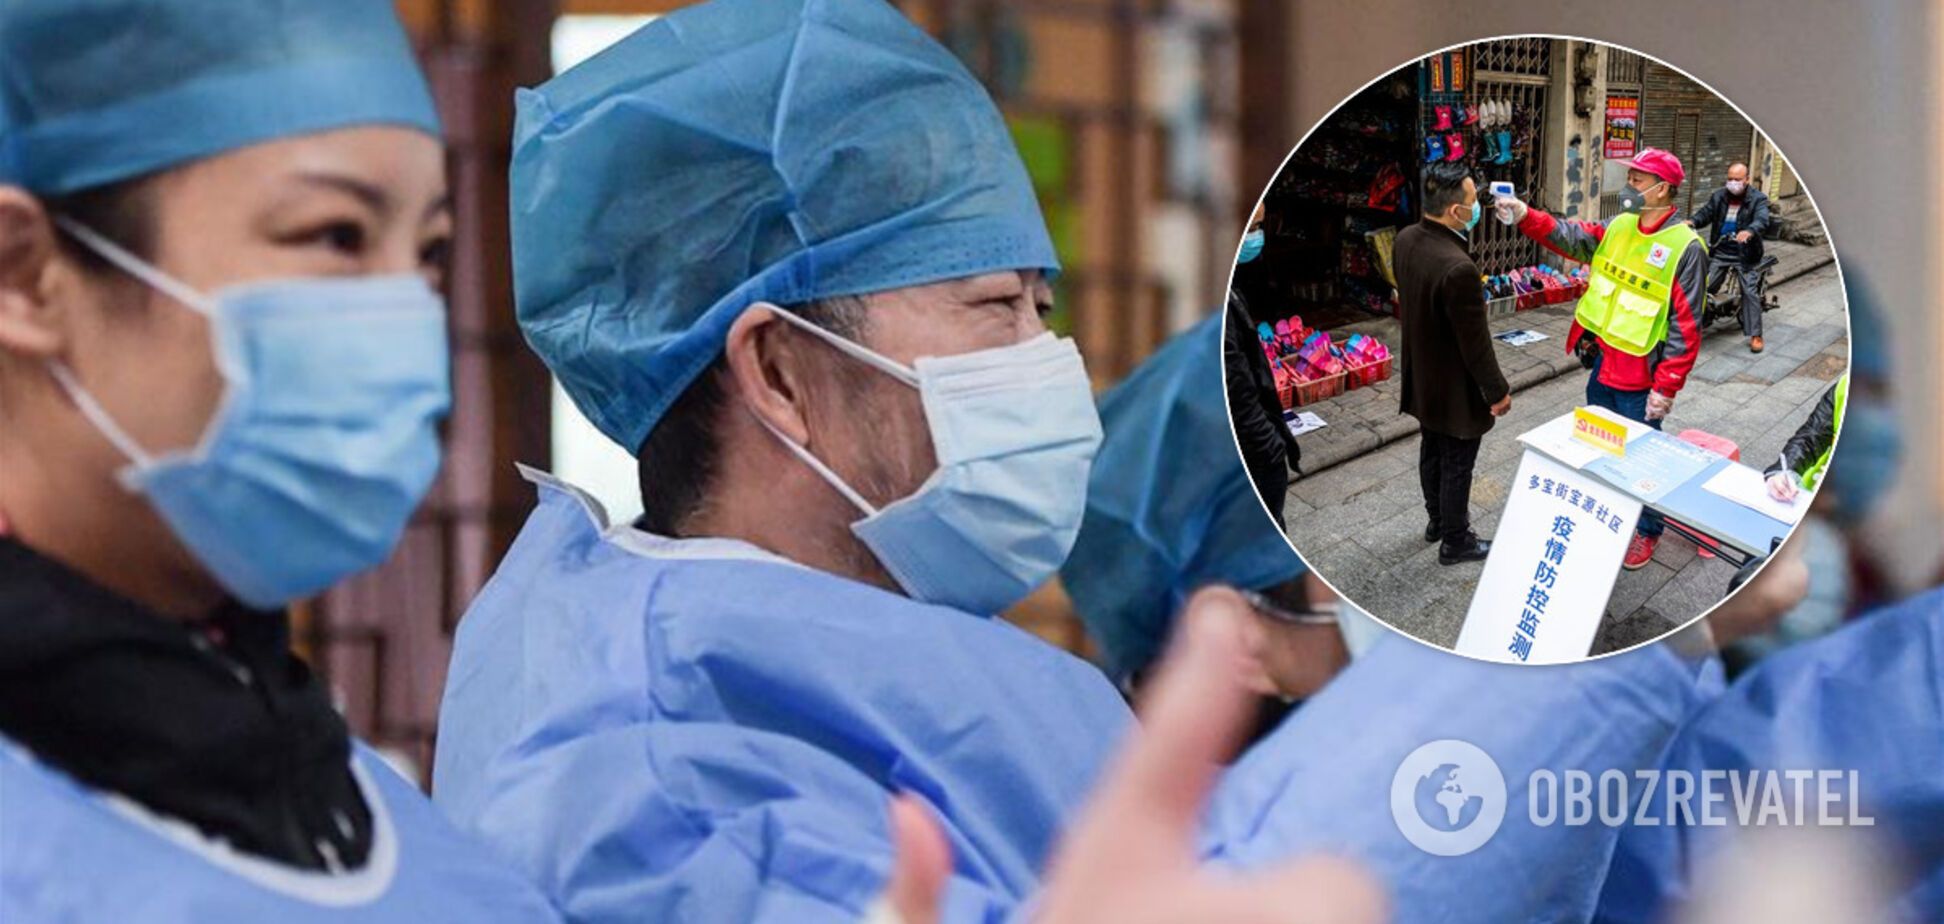 Загрожують стратою та ловлять на вулицях: як у Китаї рятуються від смертельного коронавірусу